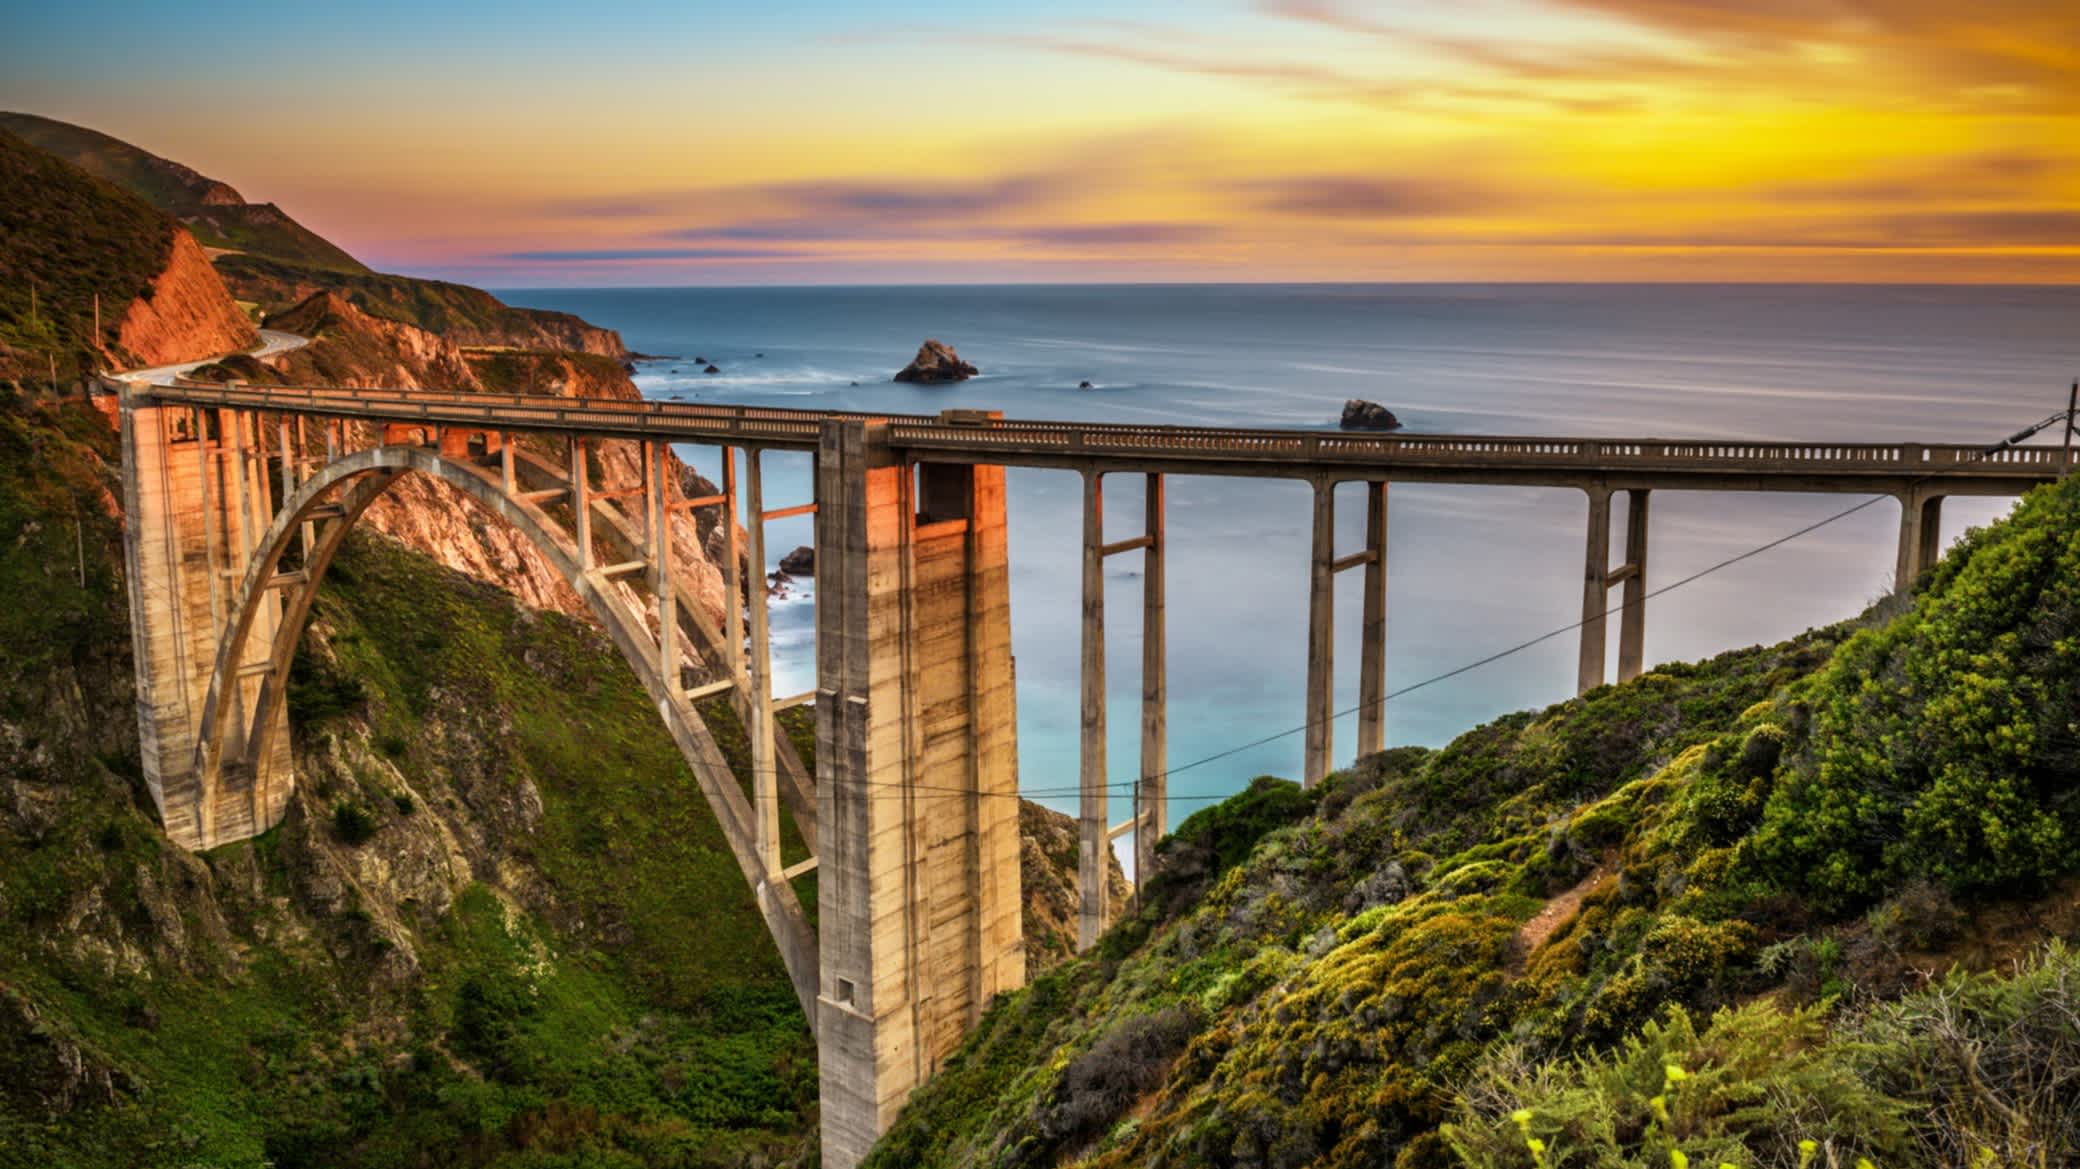 Bixby Bridge (Rocky Creek Bridge) und Pacific Coast Highway bei Sonnenuntergang in der Nähe von Big Sur in Kalifornien, USA.